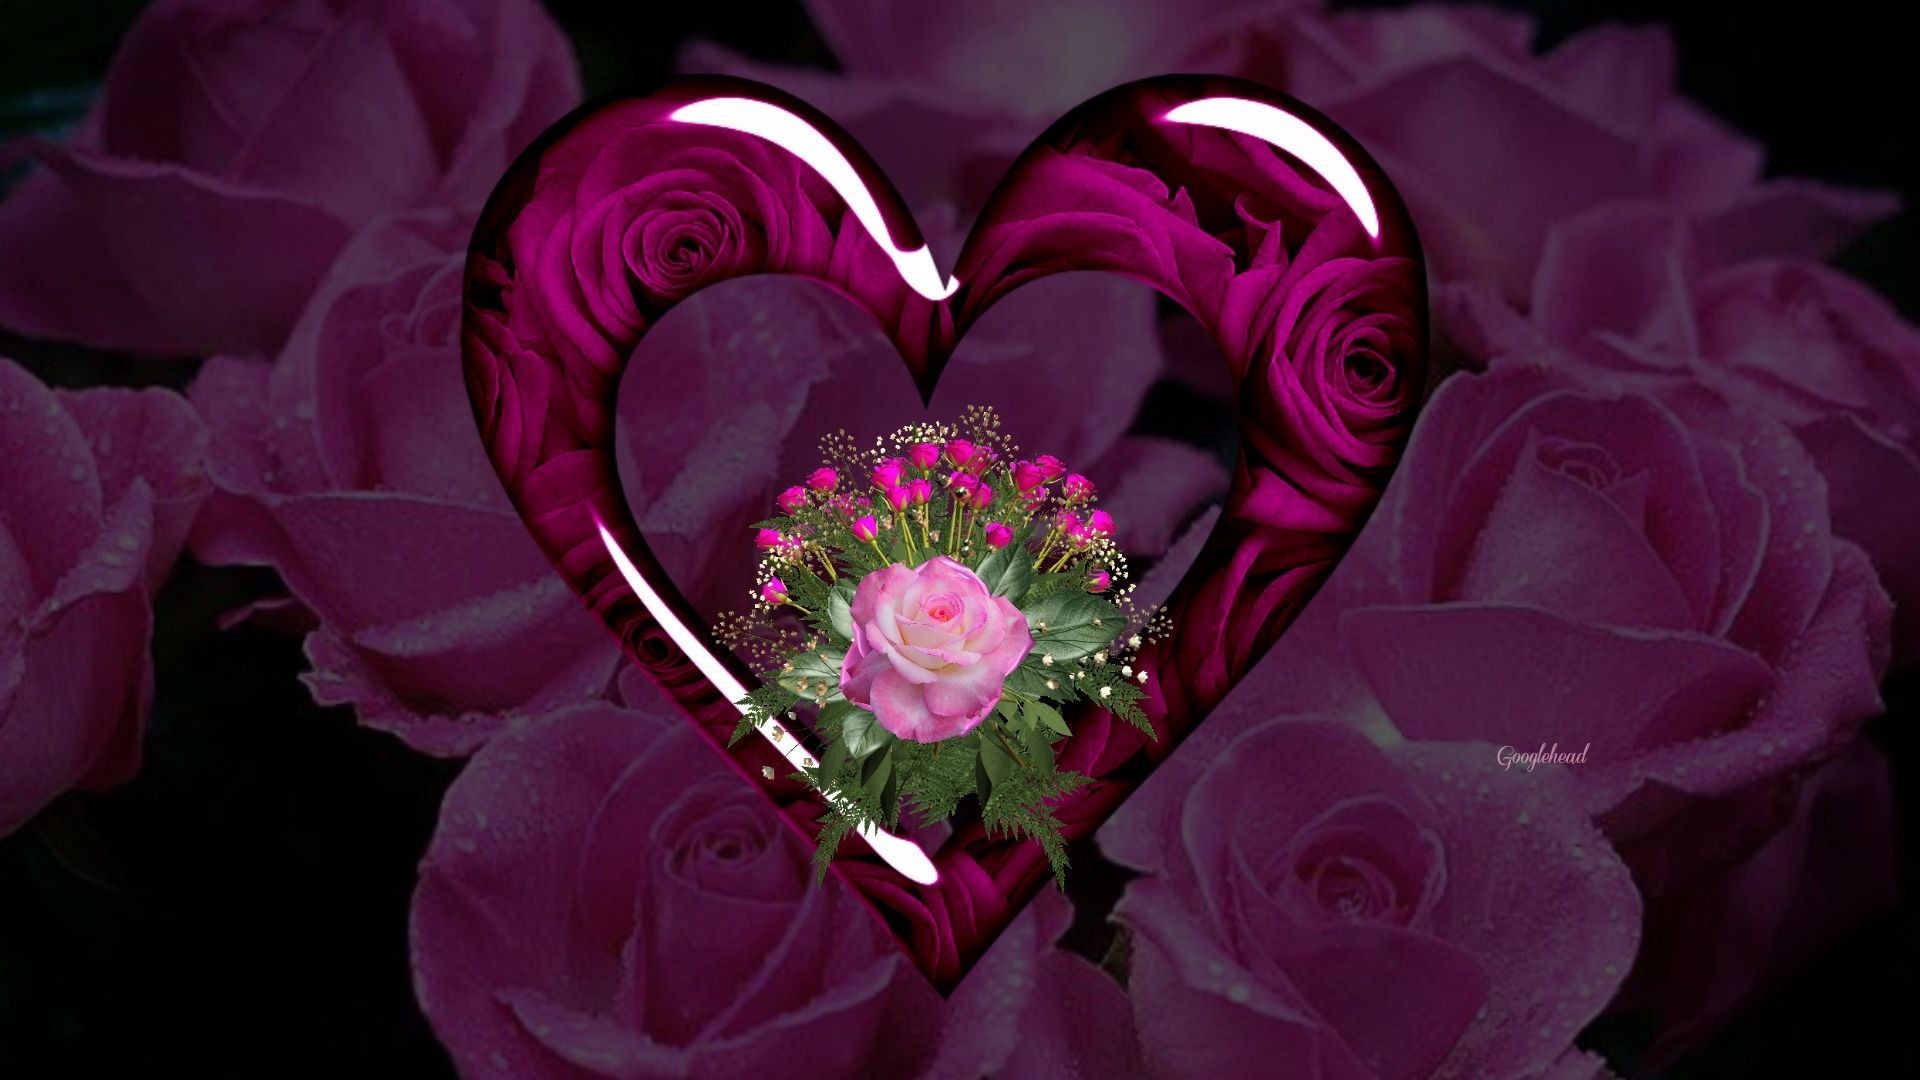 1920x1080 purple hearts and roses | Purple Hearts And Roses Wallpaper Red roses and  hearts wallpapers .